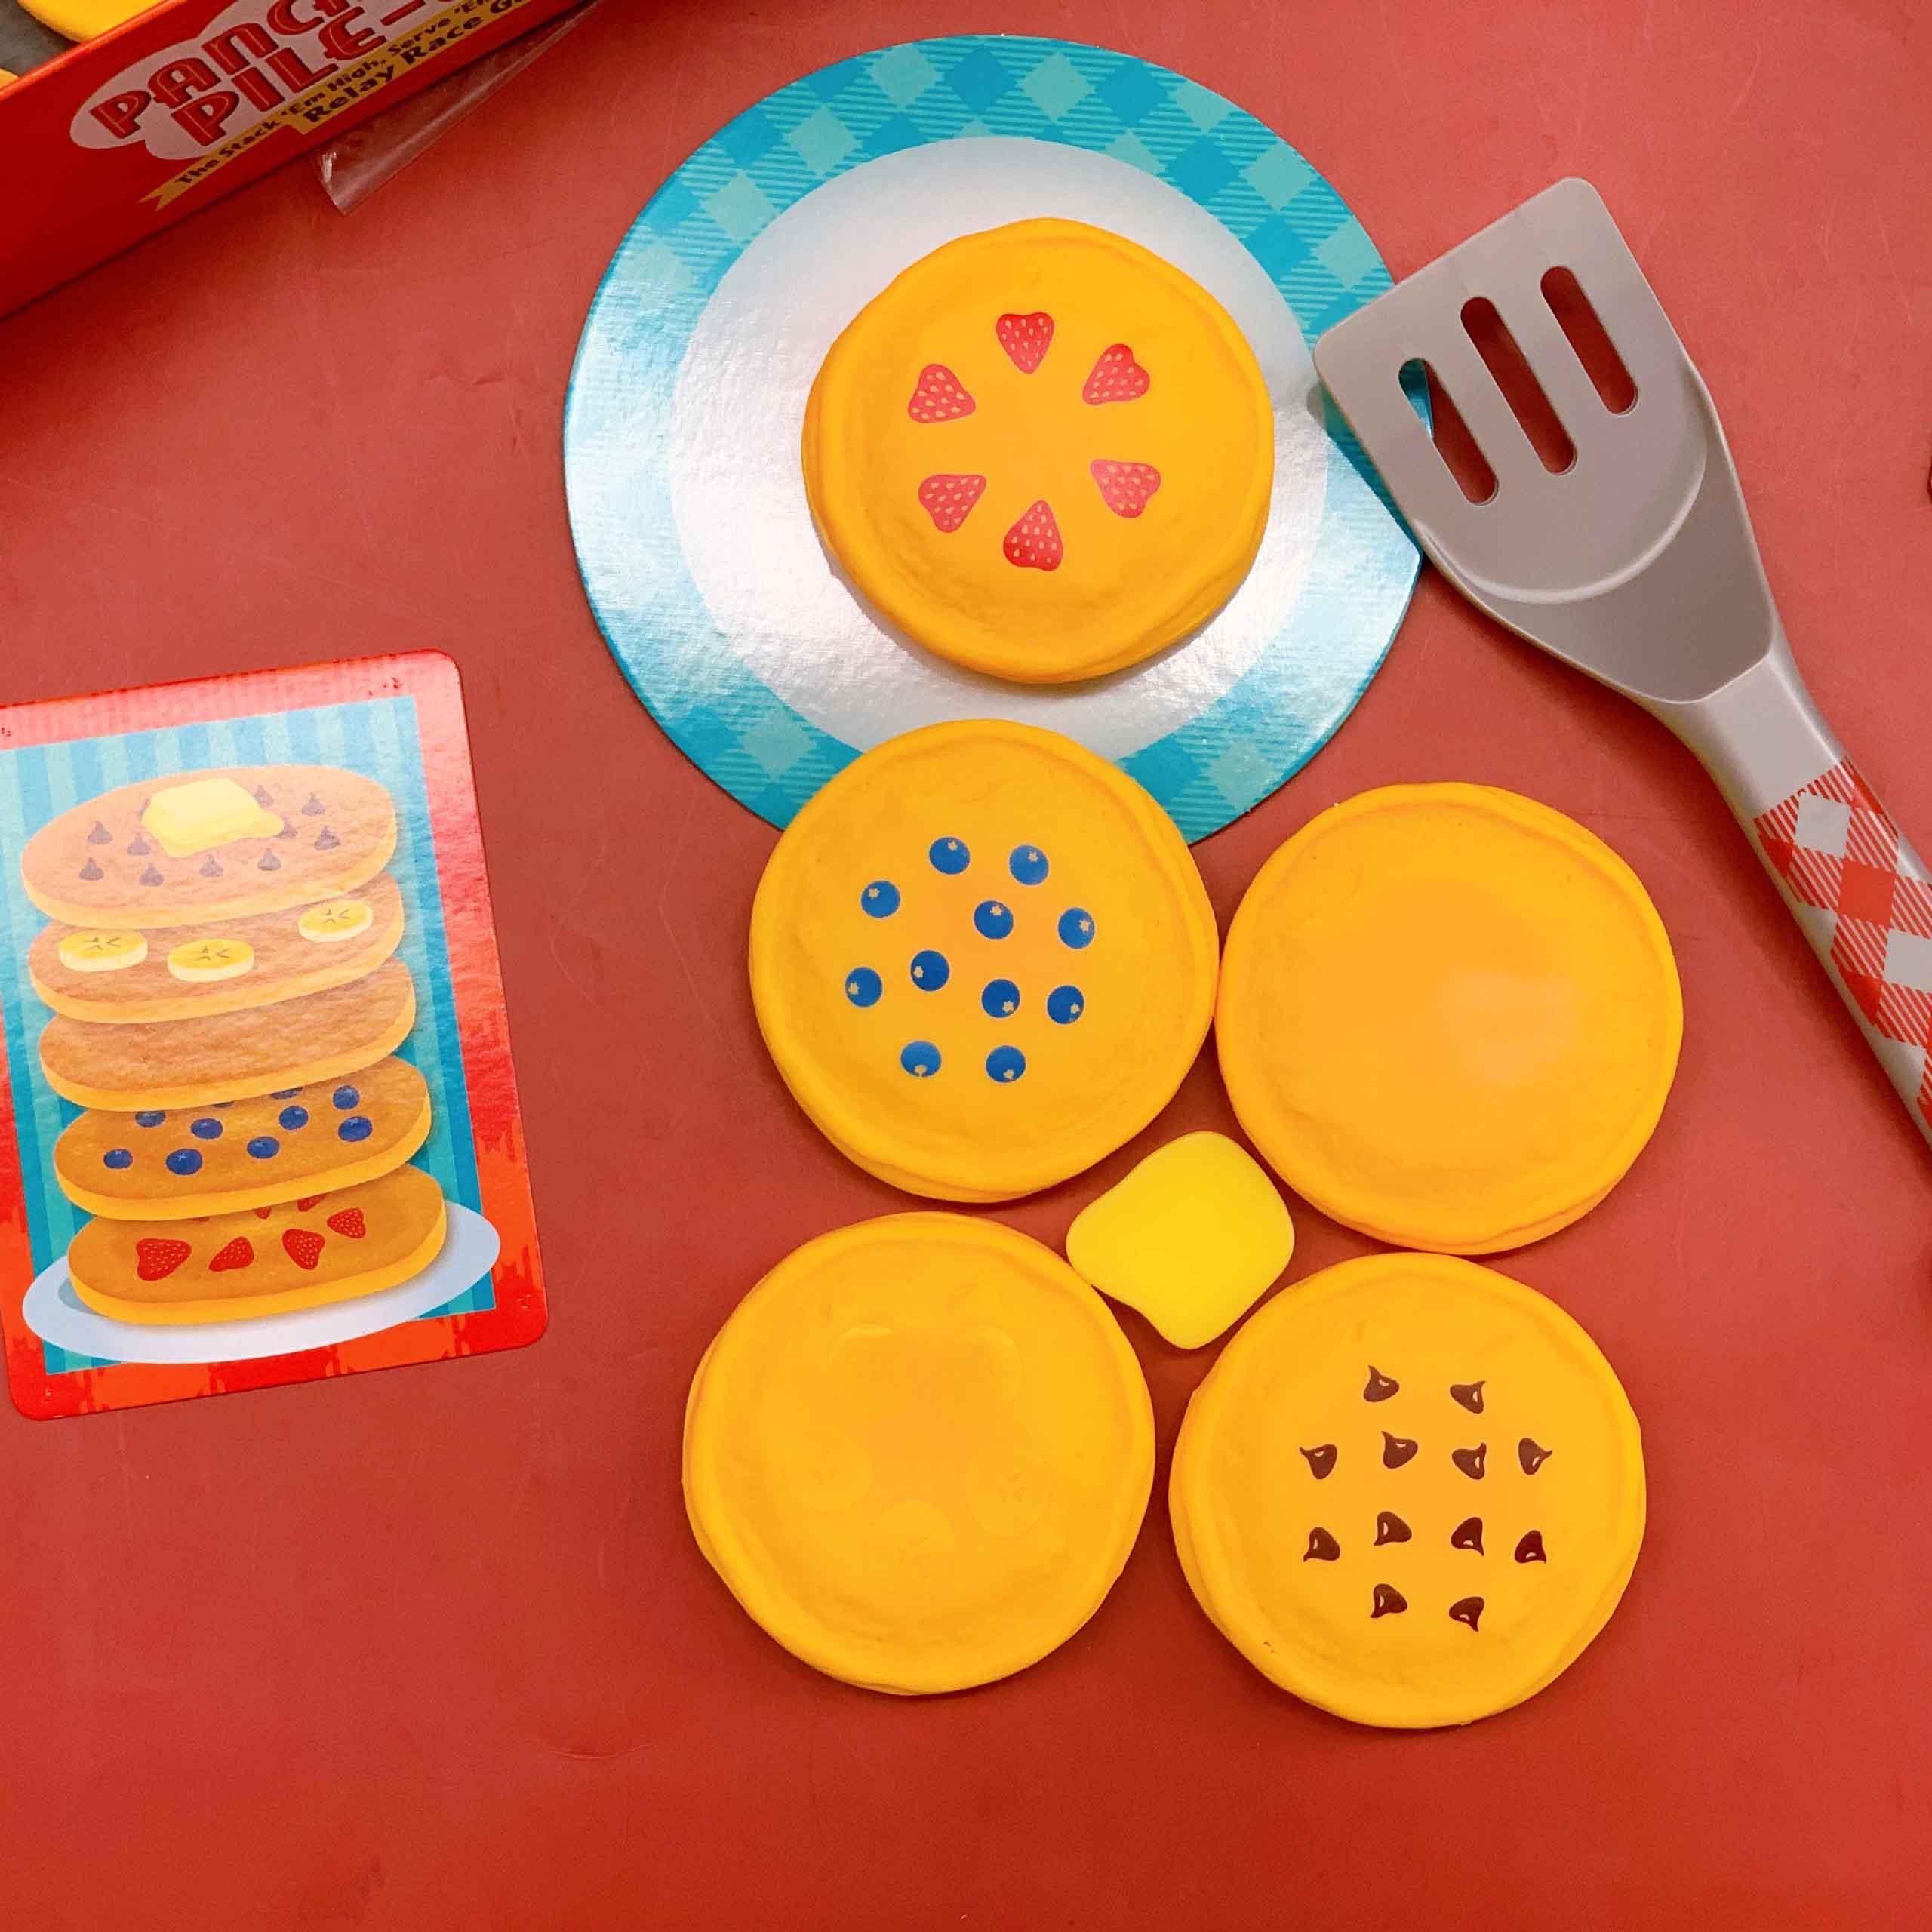 Educational Insights Bộ đồ chơi phát triển kỹ năng vận động, toán học và làm việc nhóm - Pancake Pile-Up! Relay Game